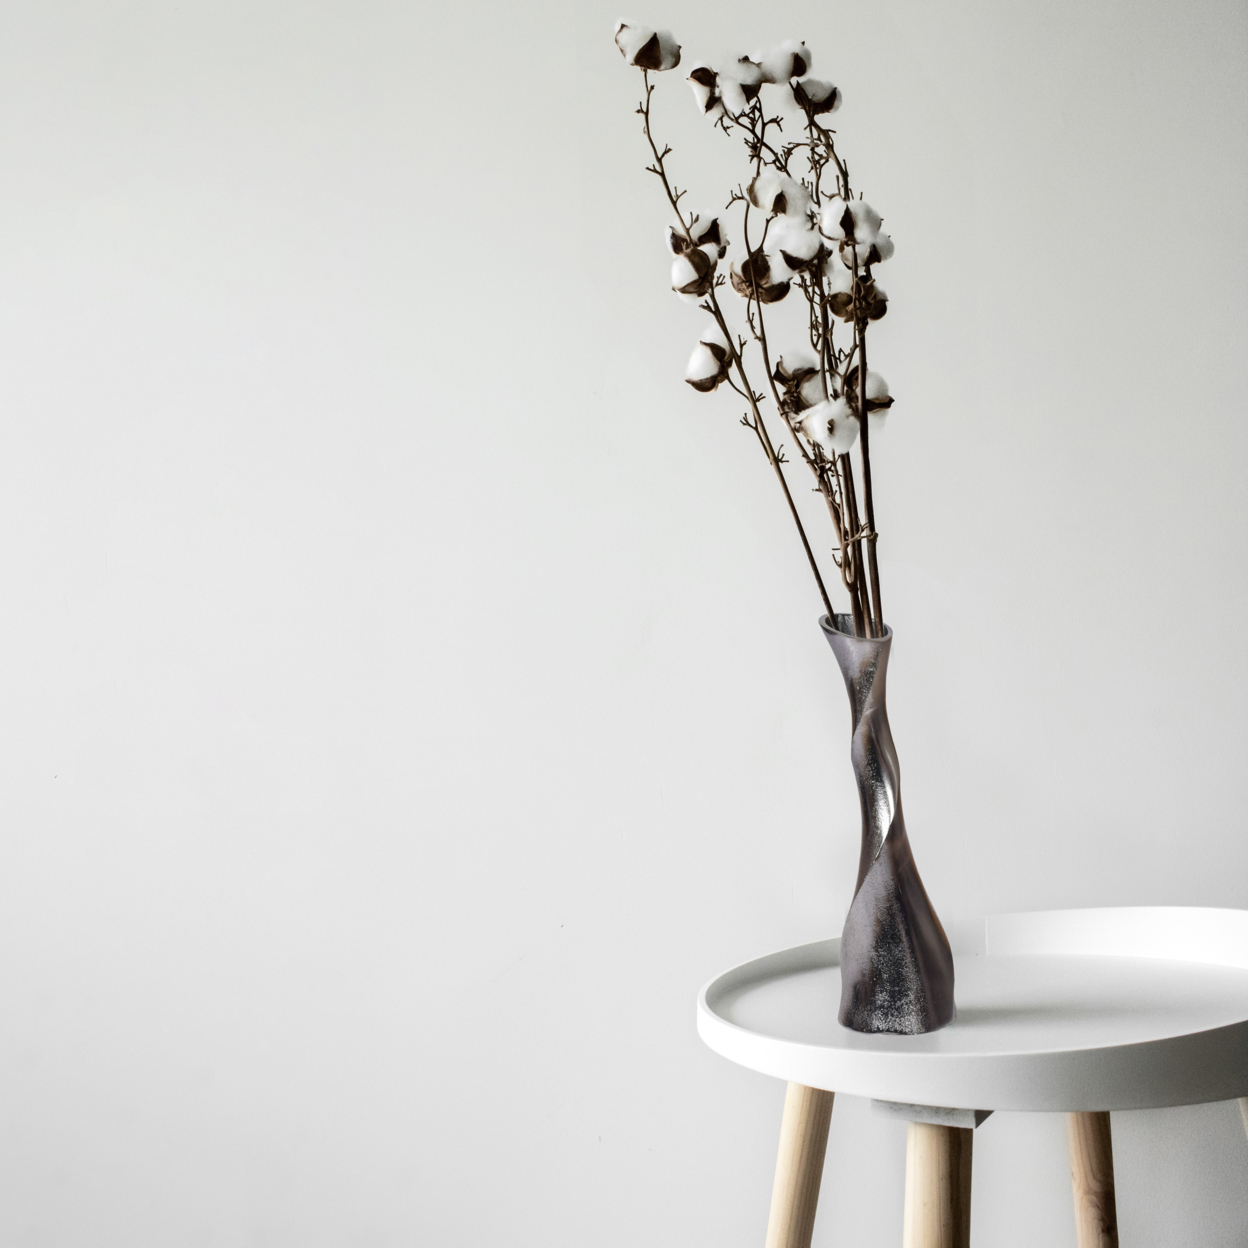 Aluminium-Casted Decorative Twisted Shape Flower Vase, Black Nickel 13.25 Inch